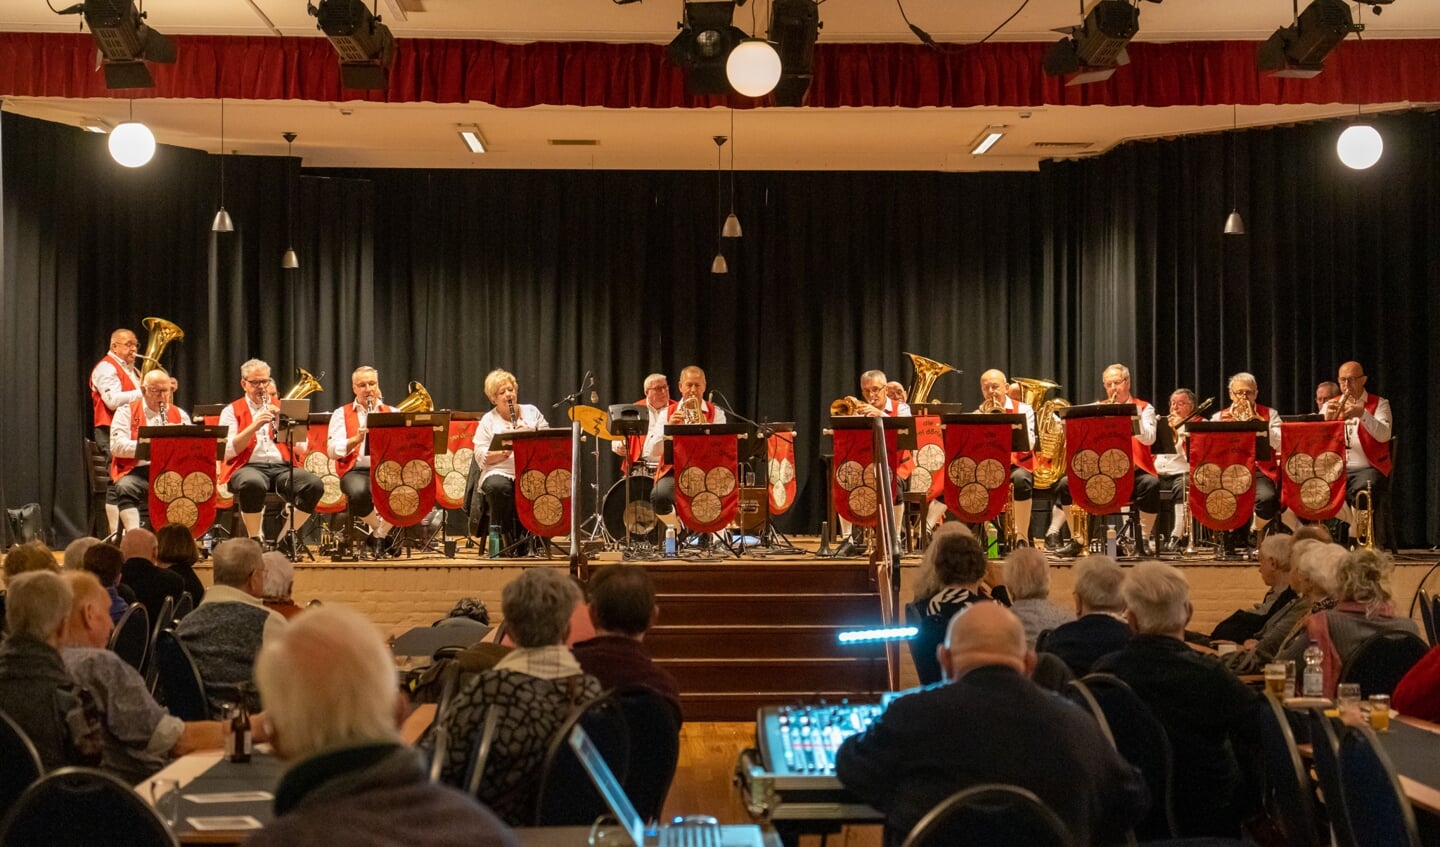 Drei Dörfer Musikanten nieuwjaarsconcert in de Vink